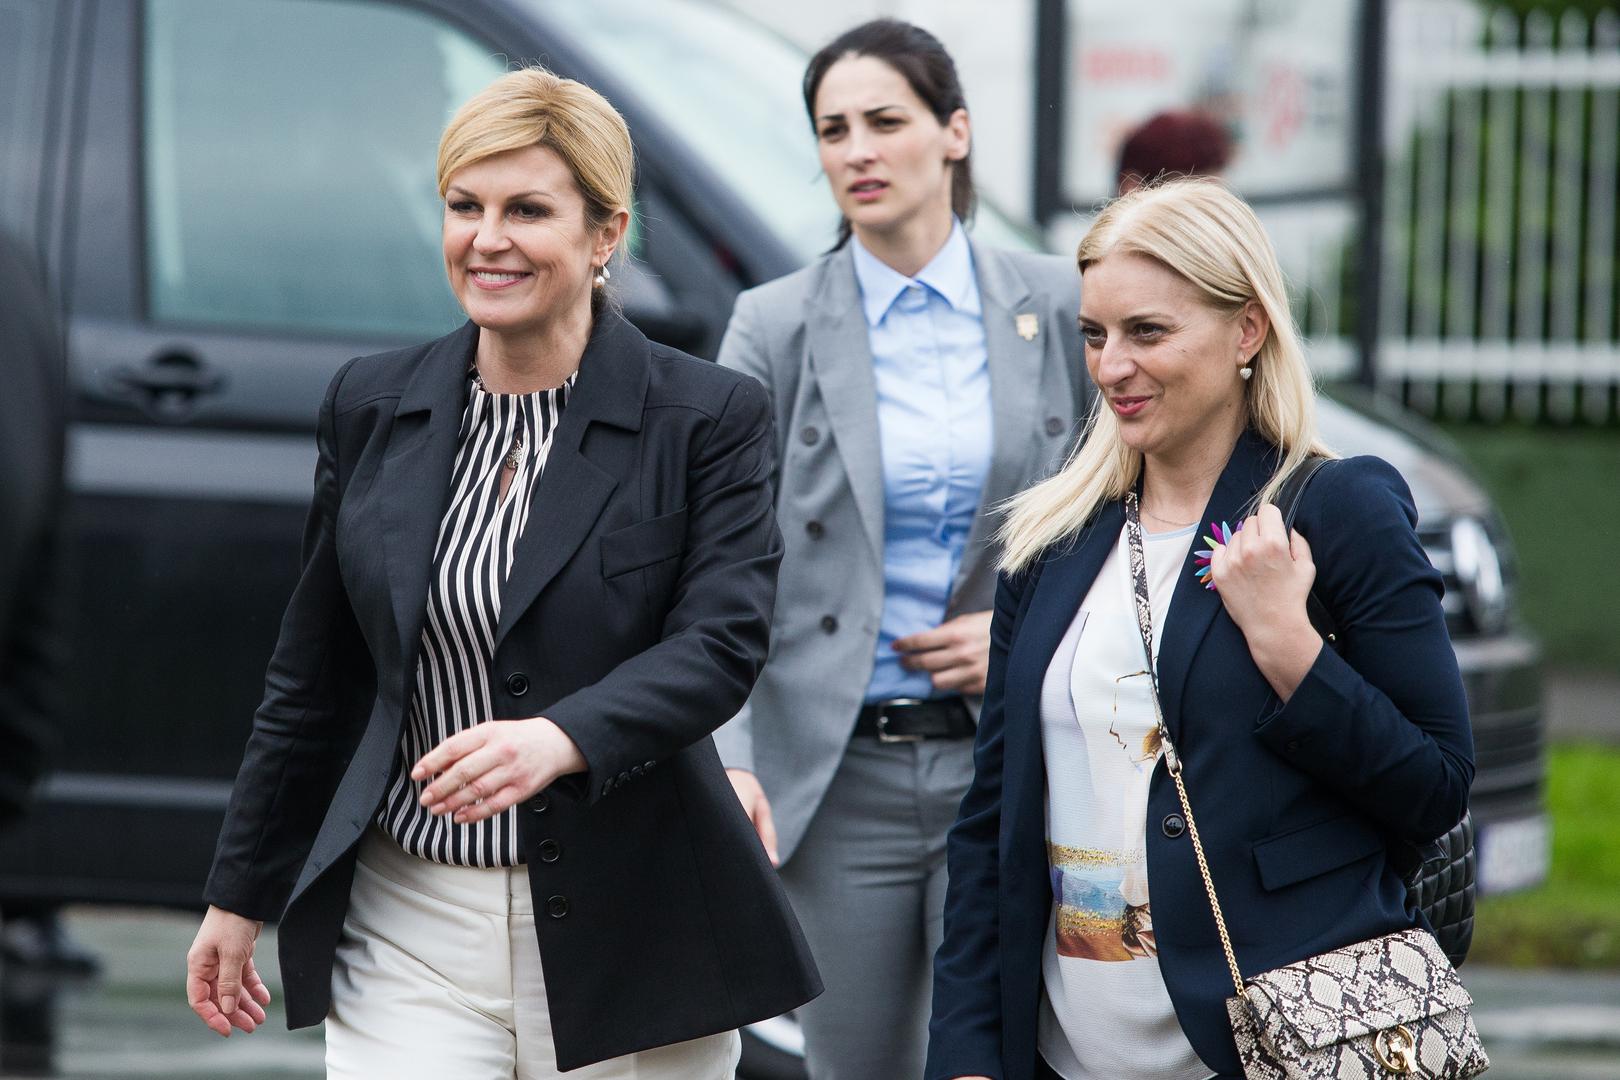 Predsjednica Kolinda Grabar Kitarović dan je provela s građanima u Osijeku.